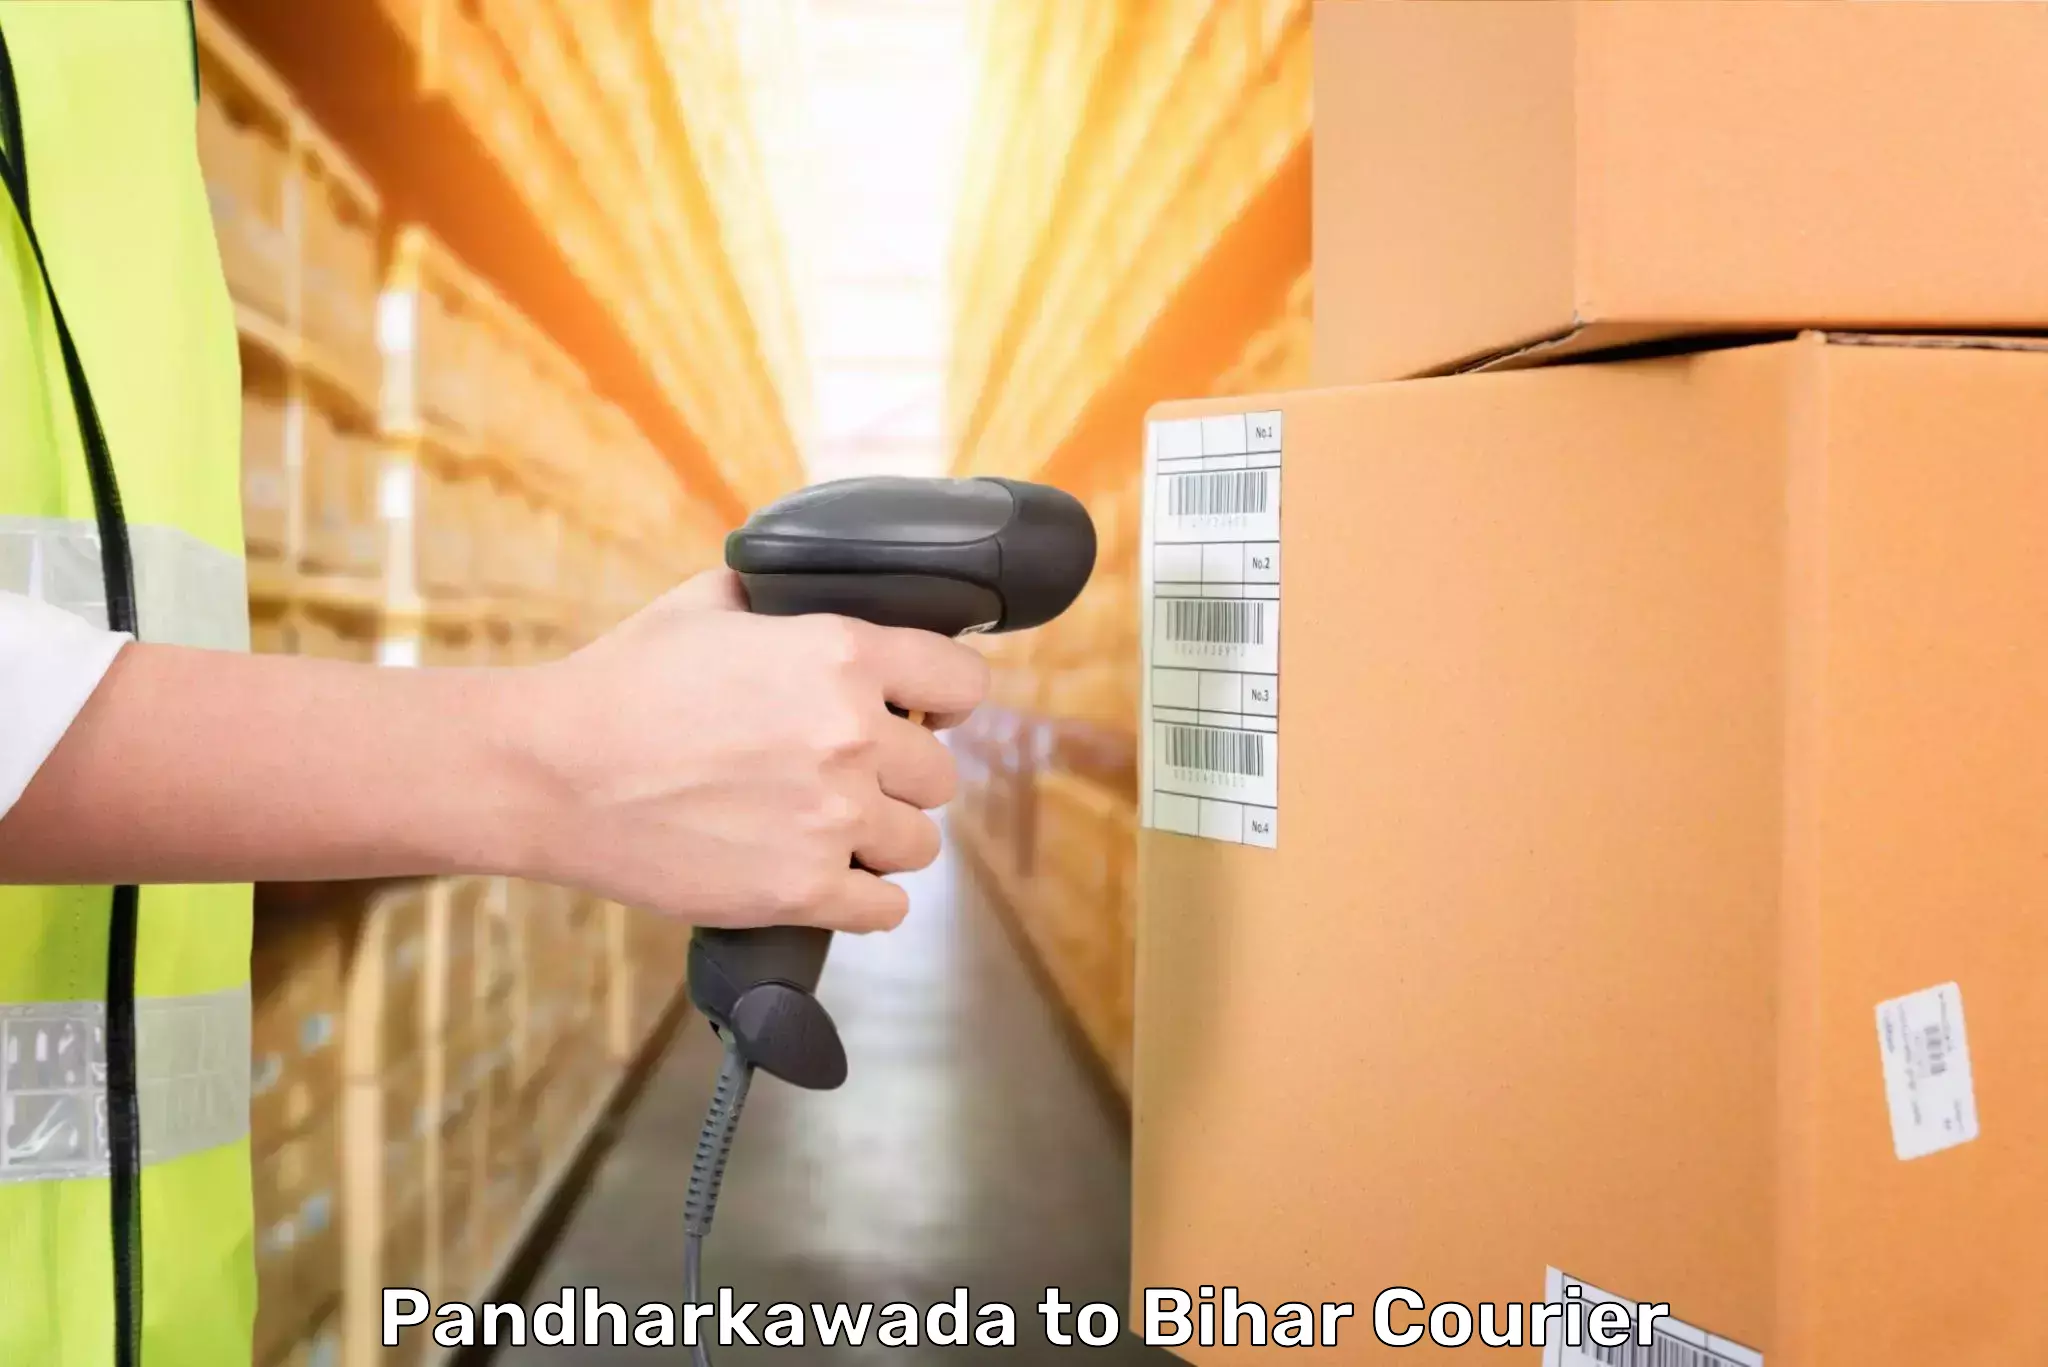 Luggage delivery network Pandharkawada to Aurangabad Bihar